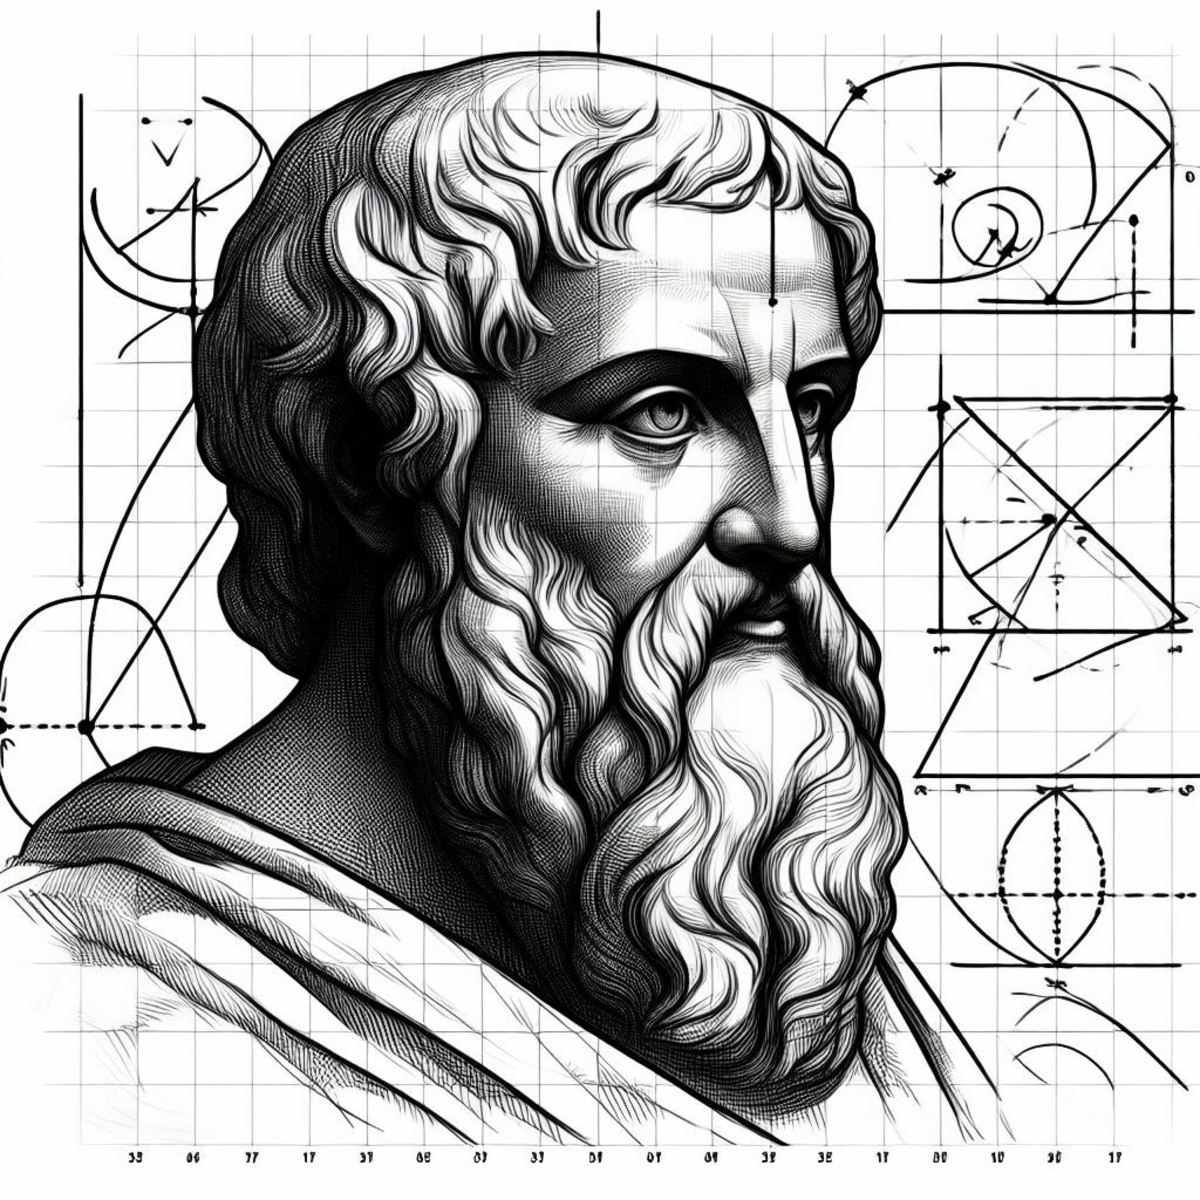 Who was Pythagoras?